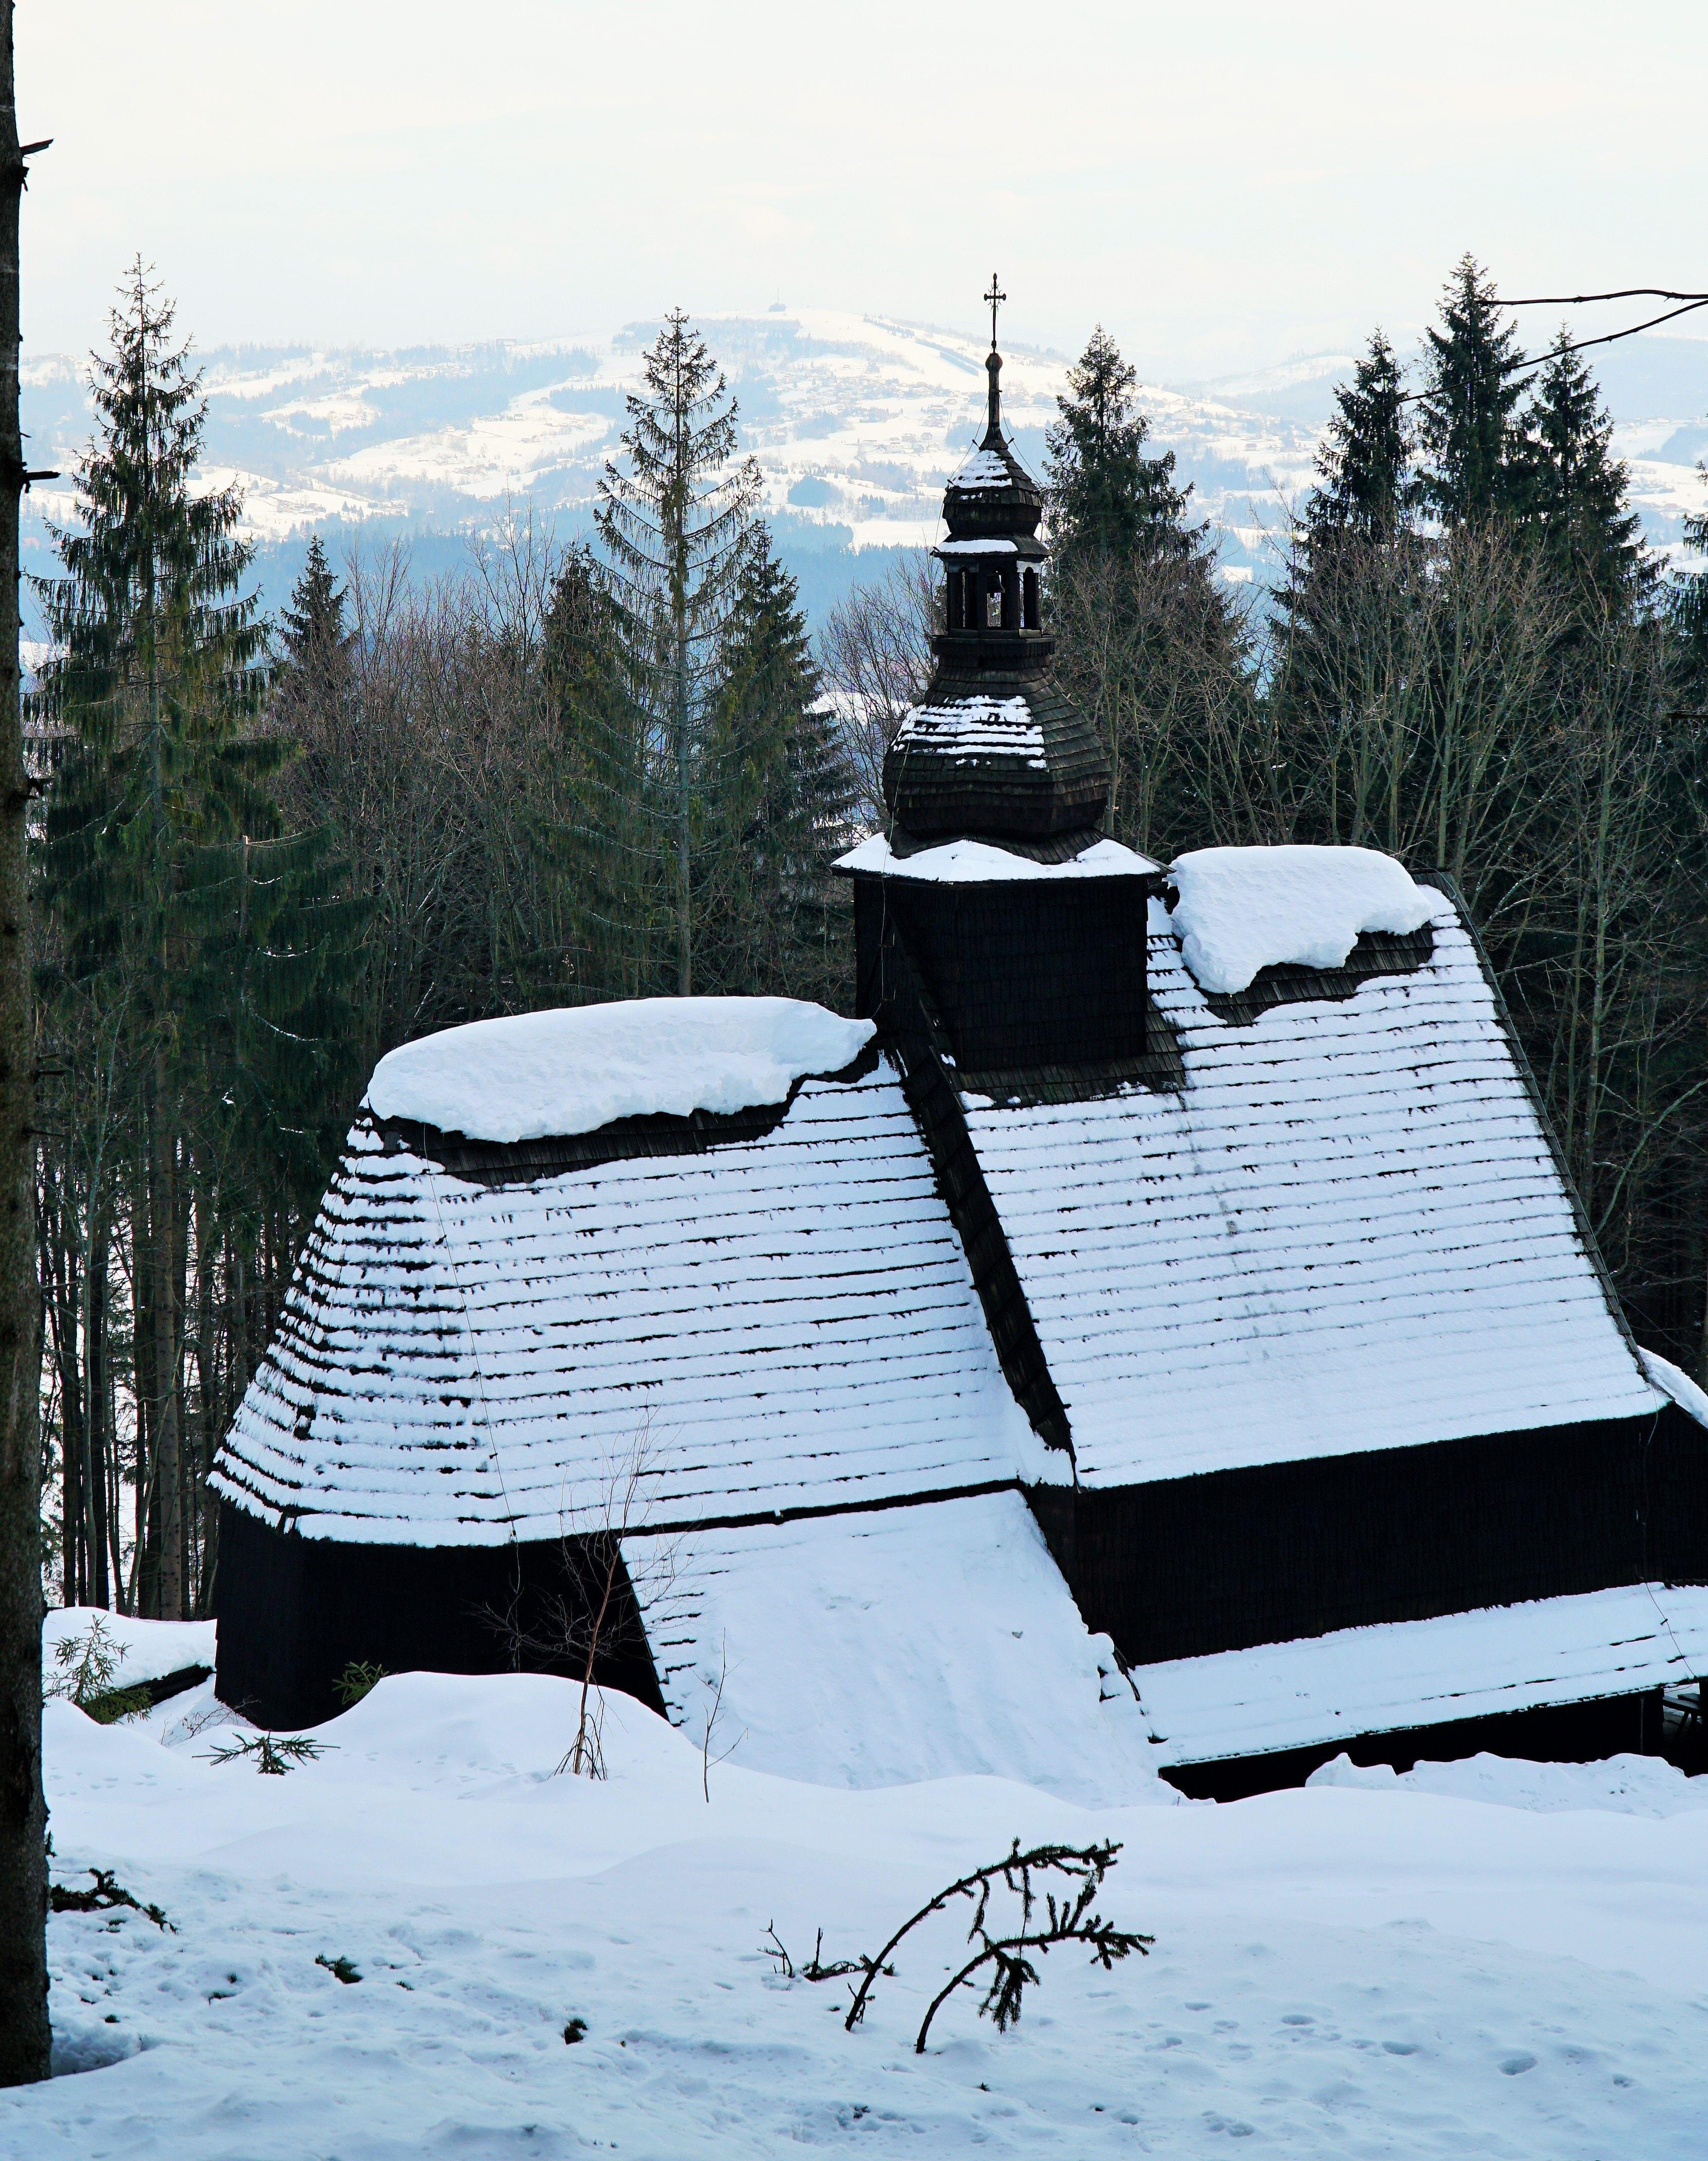 Drewniany kościół widoczny od strony przełęczy w zimowej szacie. W tle drzewa iglaste, na dalekim
planie widok ośnieżonego szczytu Ochodzita w Koniakowie.